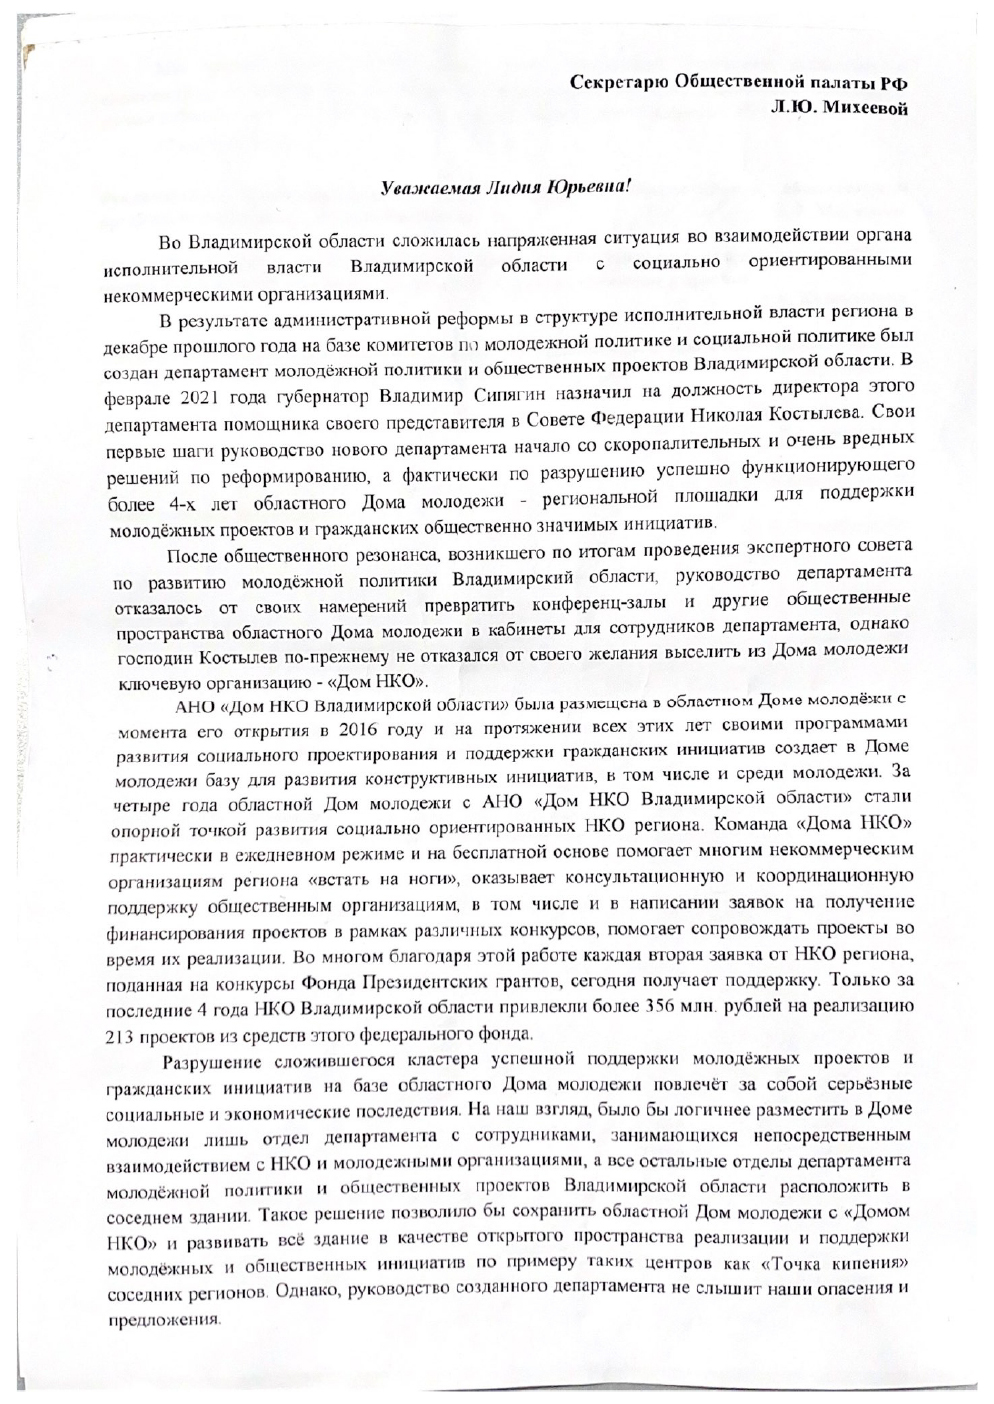 Письмо от НКО 33 региона в Общественную палату РФ-1.jpg